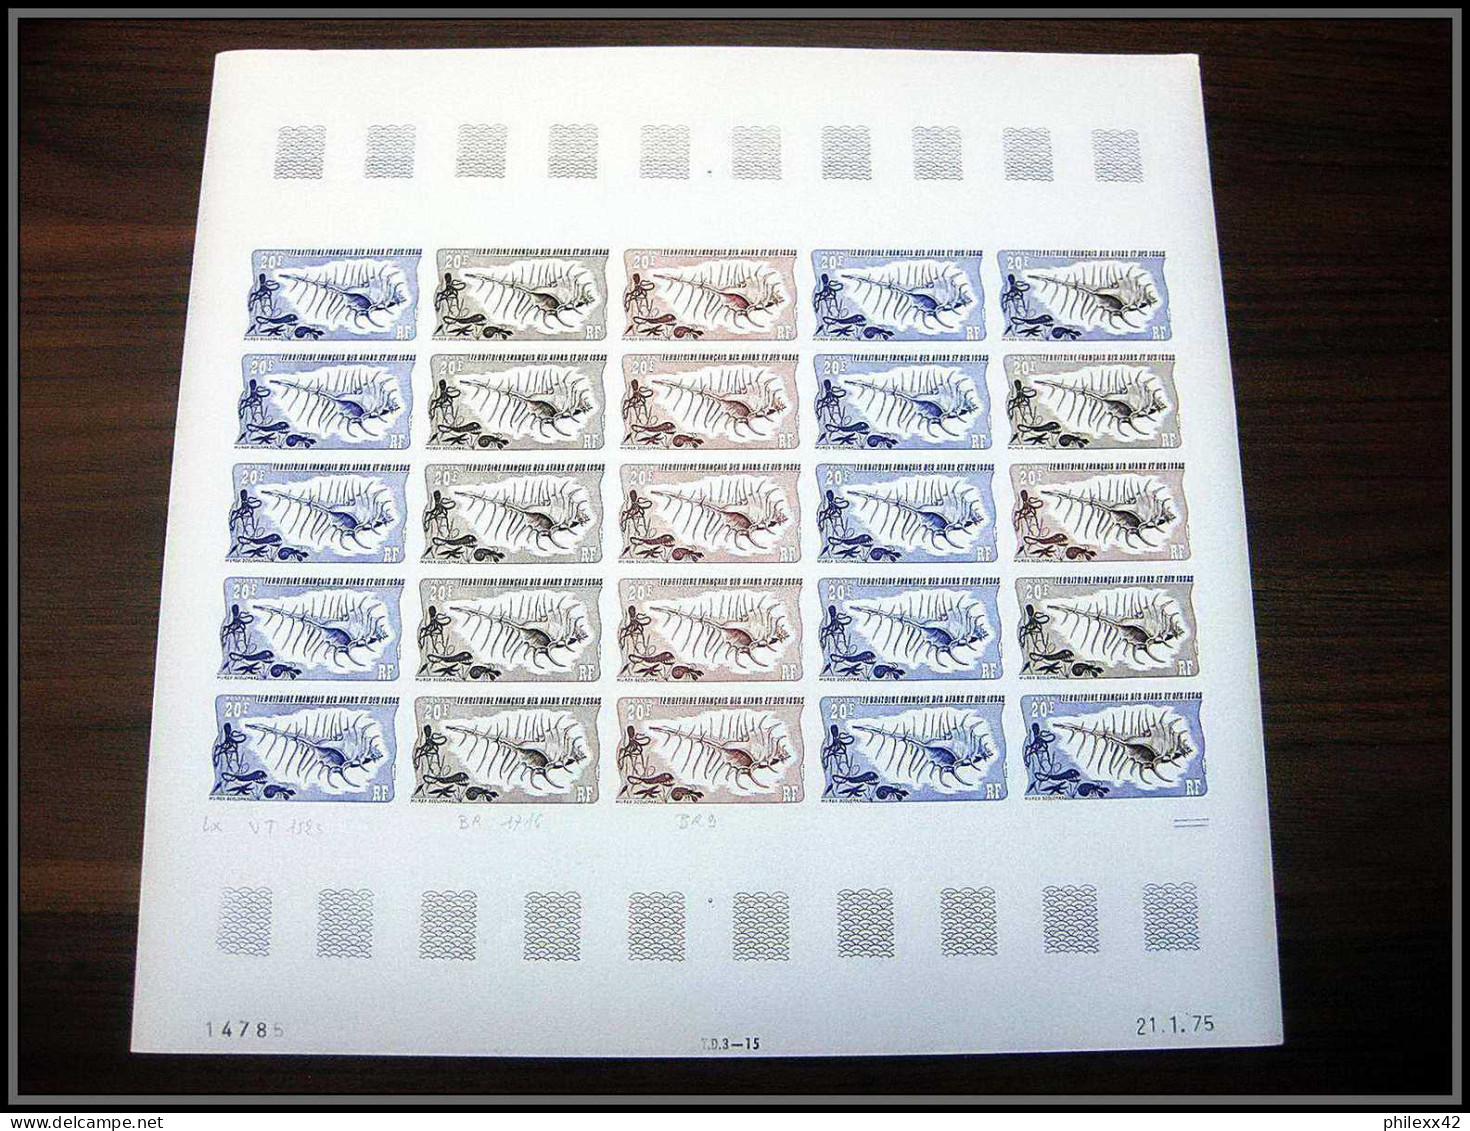 91176 Afars et Issas 1975 coquillage shell 625 timbres feuilles complète (sheets) Essai proof Non dentelé imperf